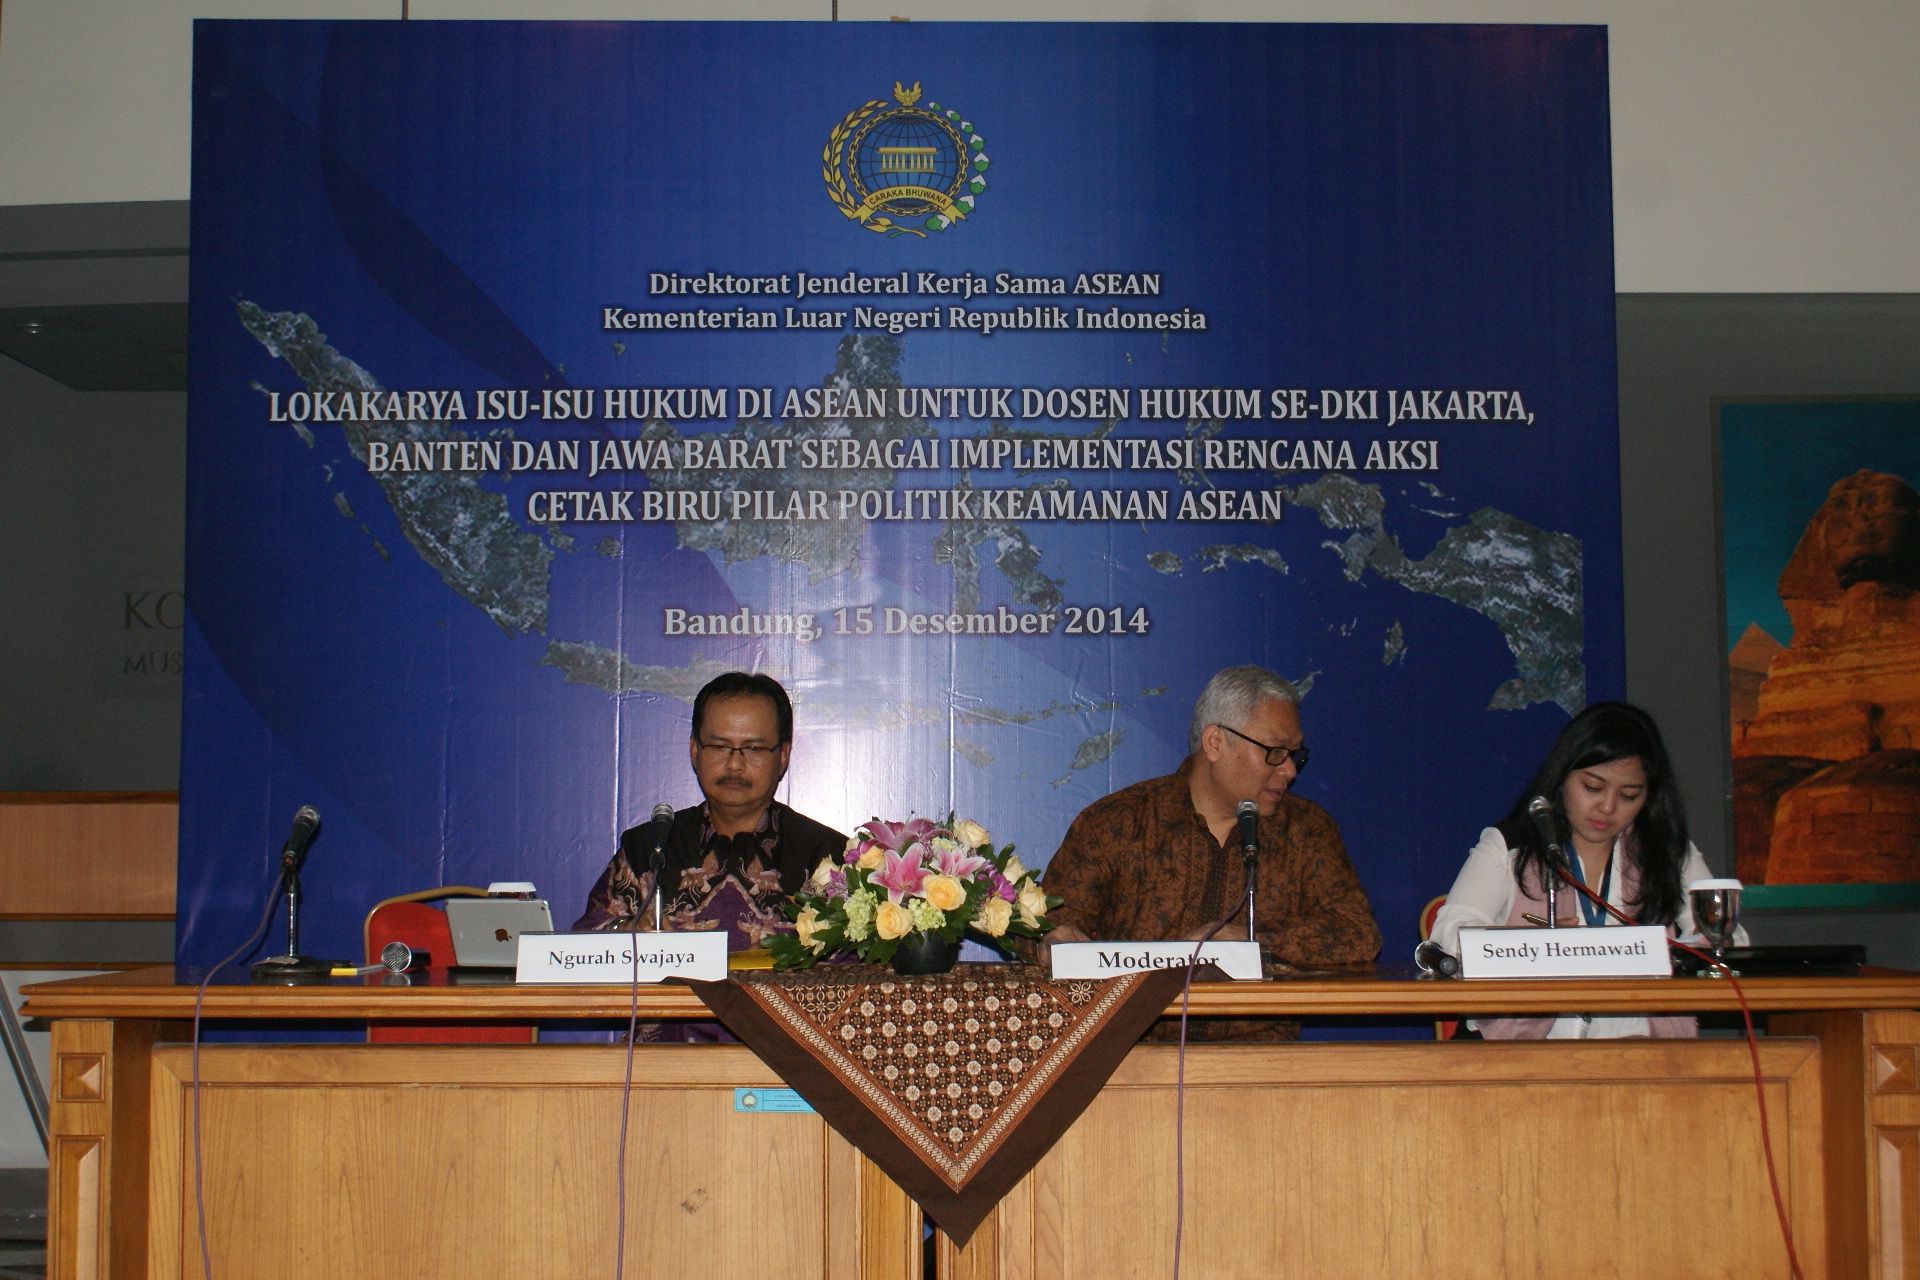 Technical Officer Legal Services and Agreement Division Sekretariat ASEAN, Sendy Hermawati dalam lokakarya hukum ASEAN yang diselenggarakan Kemenlu di Bandung, Senin (15/12). Foto: Ali